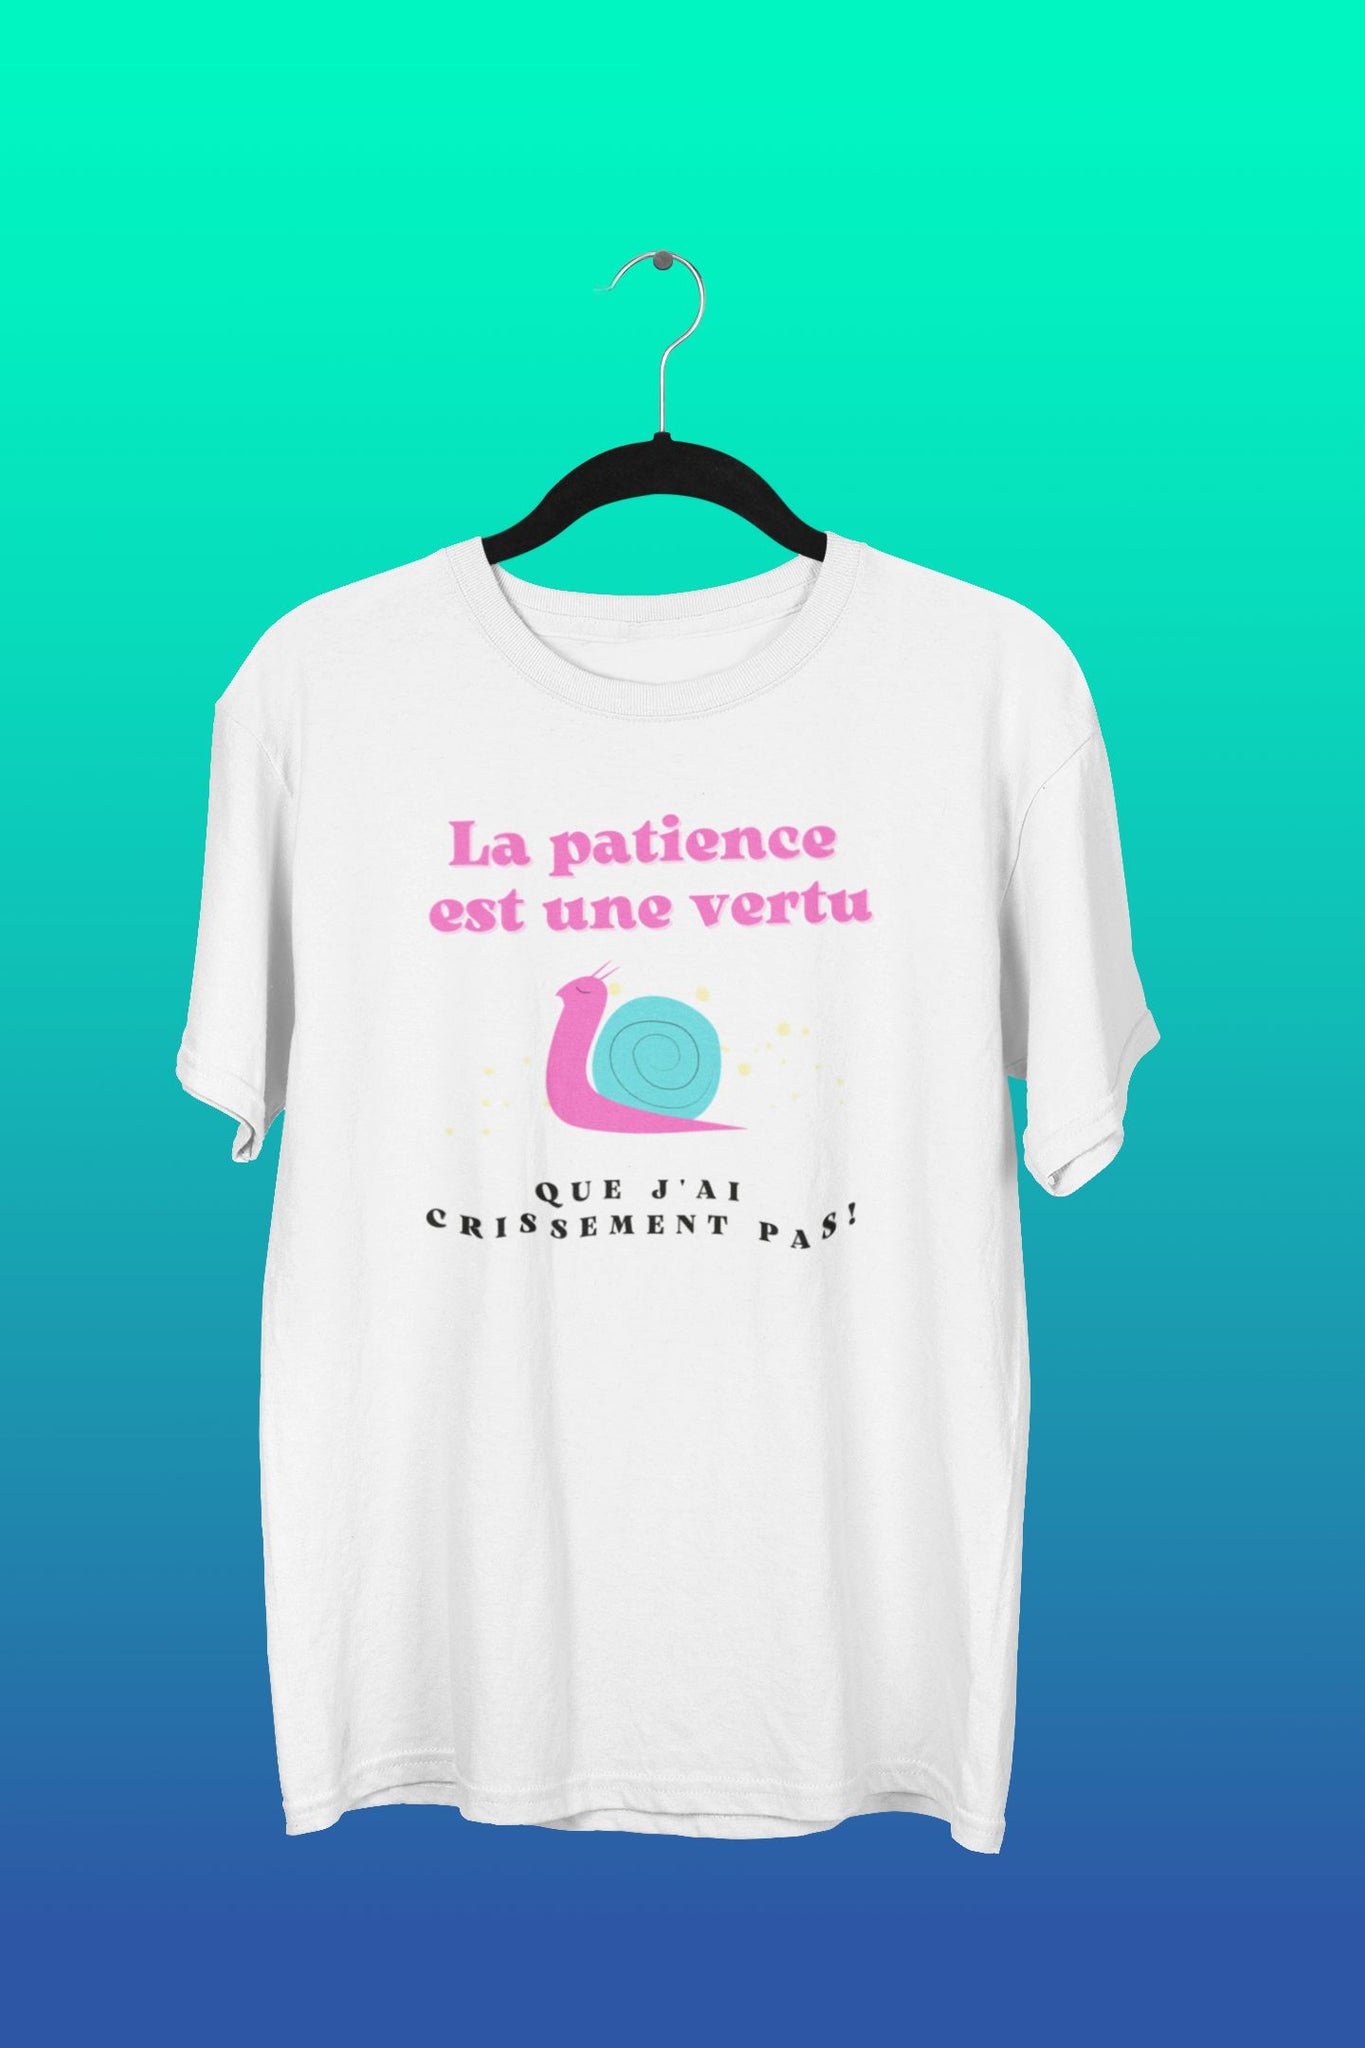 T-Shirt La patience est une vertu que j'ai crissement pas